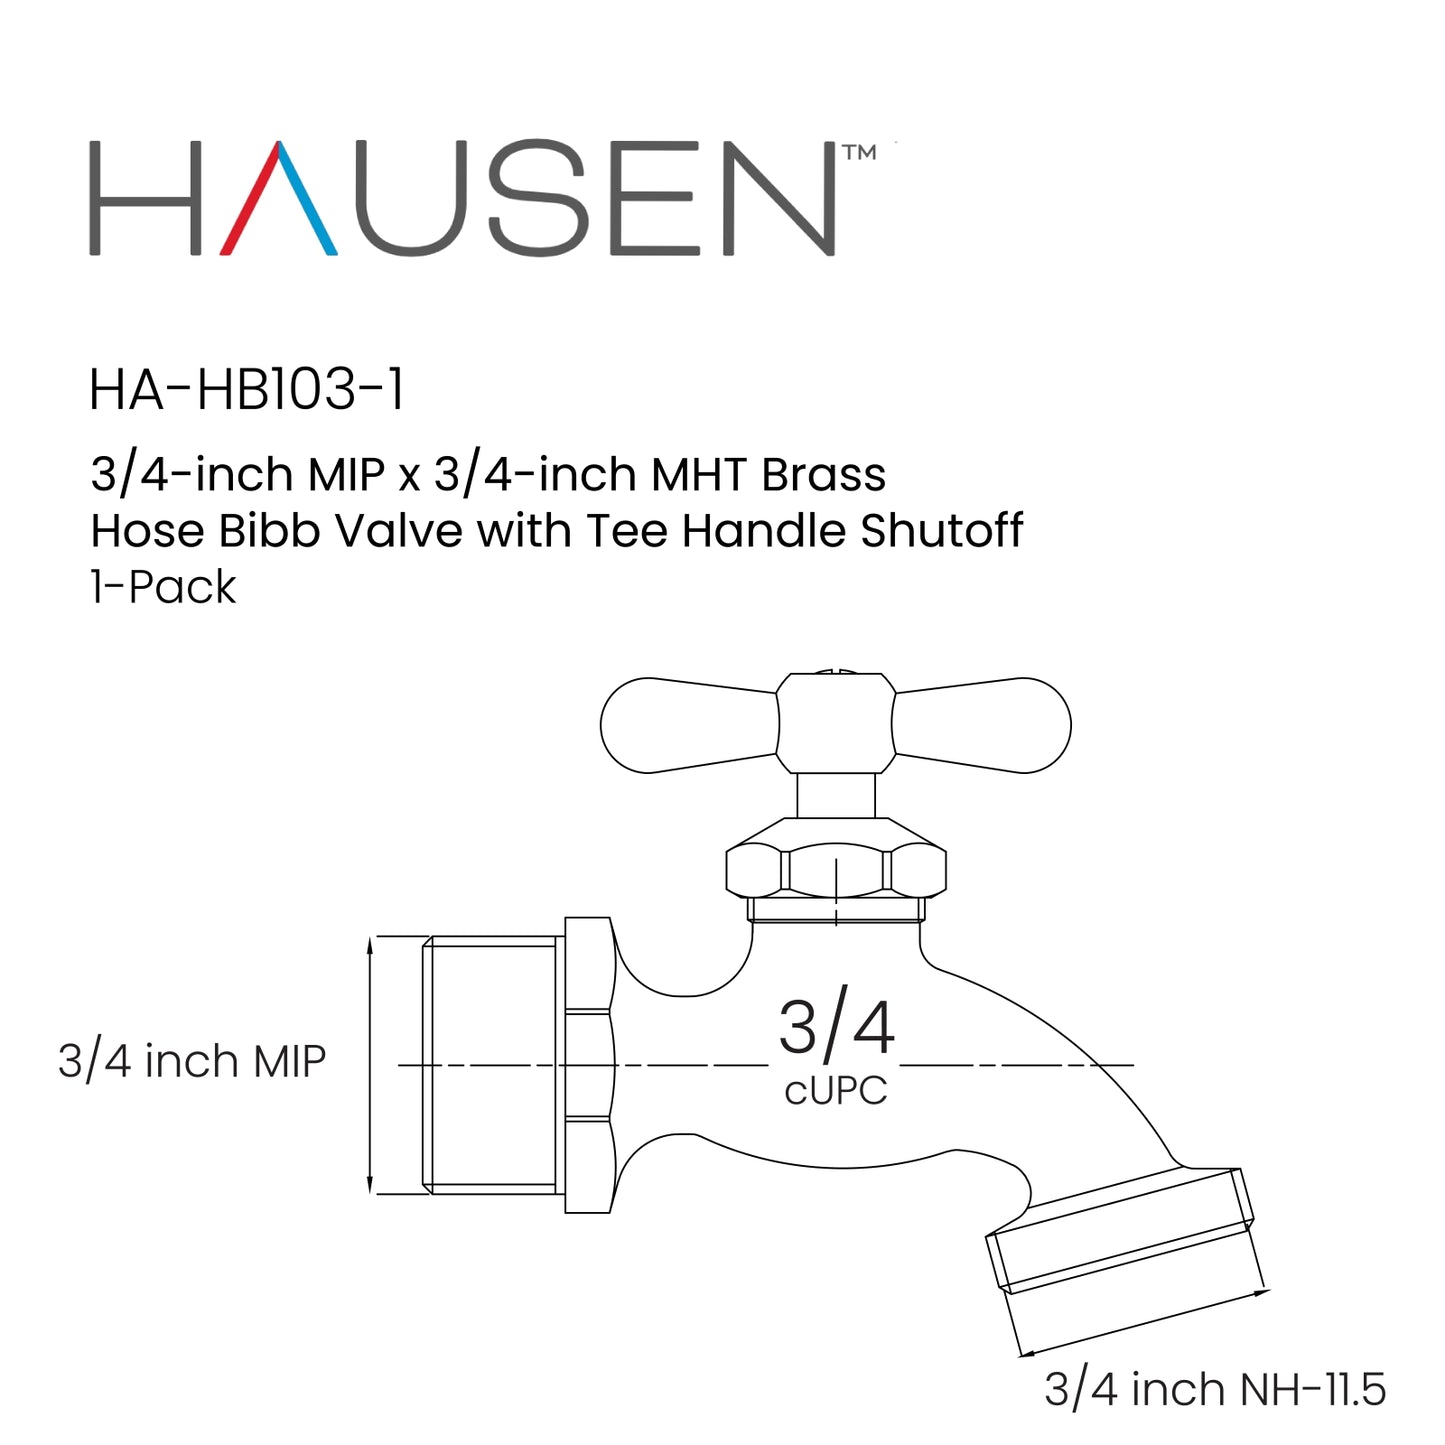 Hausen 3/4-inch MIP x 3/4-inch MHT Brass Hose Bibb Valve with Tee Handle Shutoff, 1-Pack